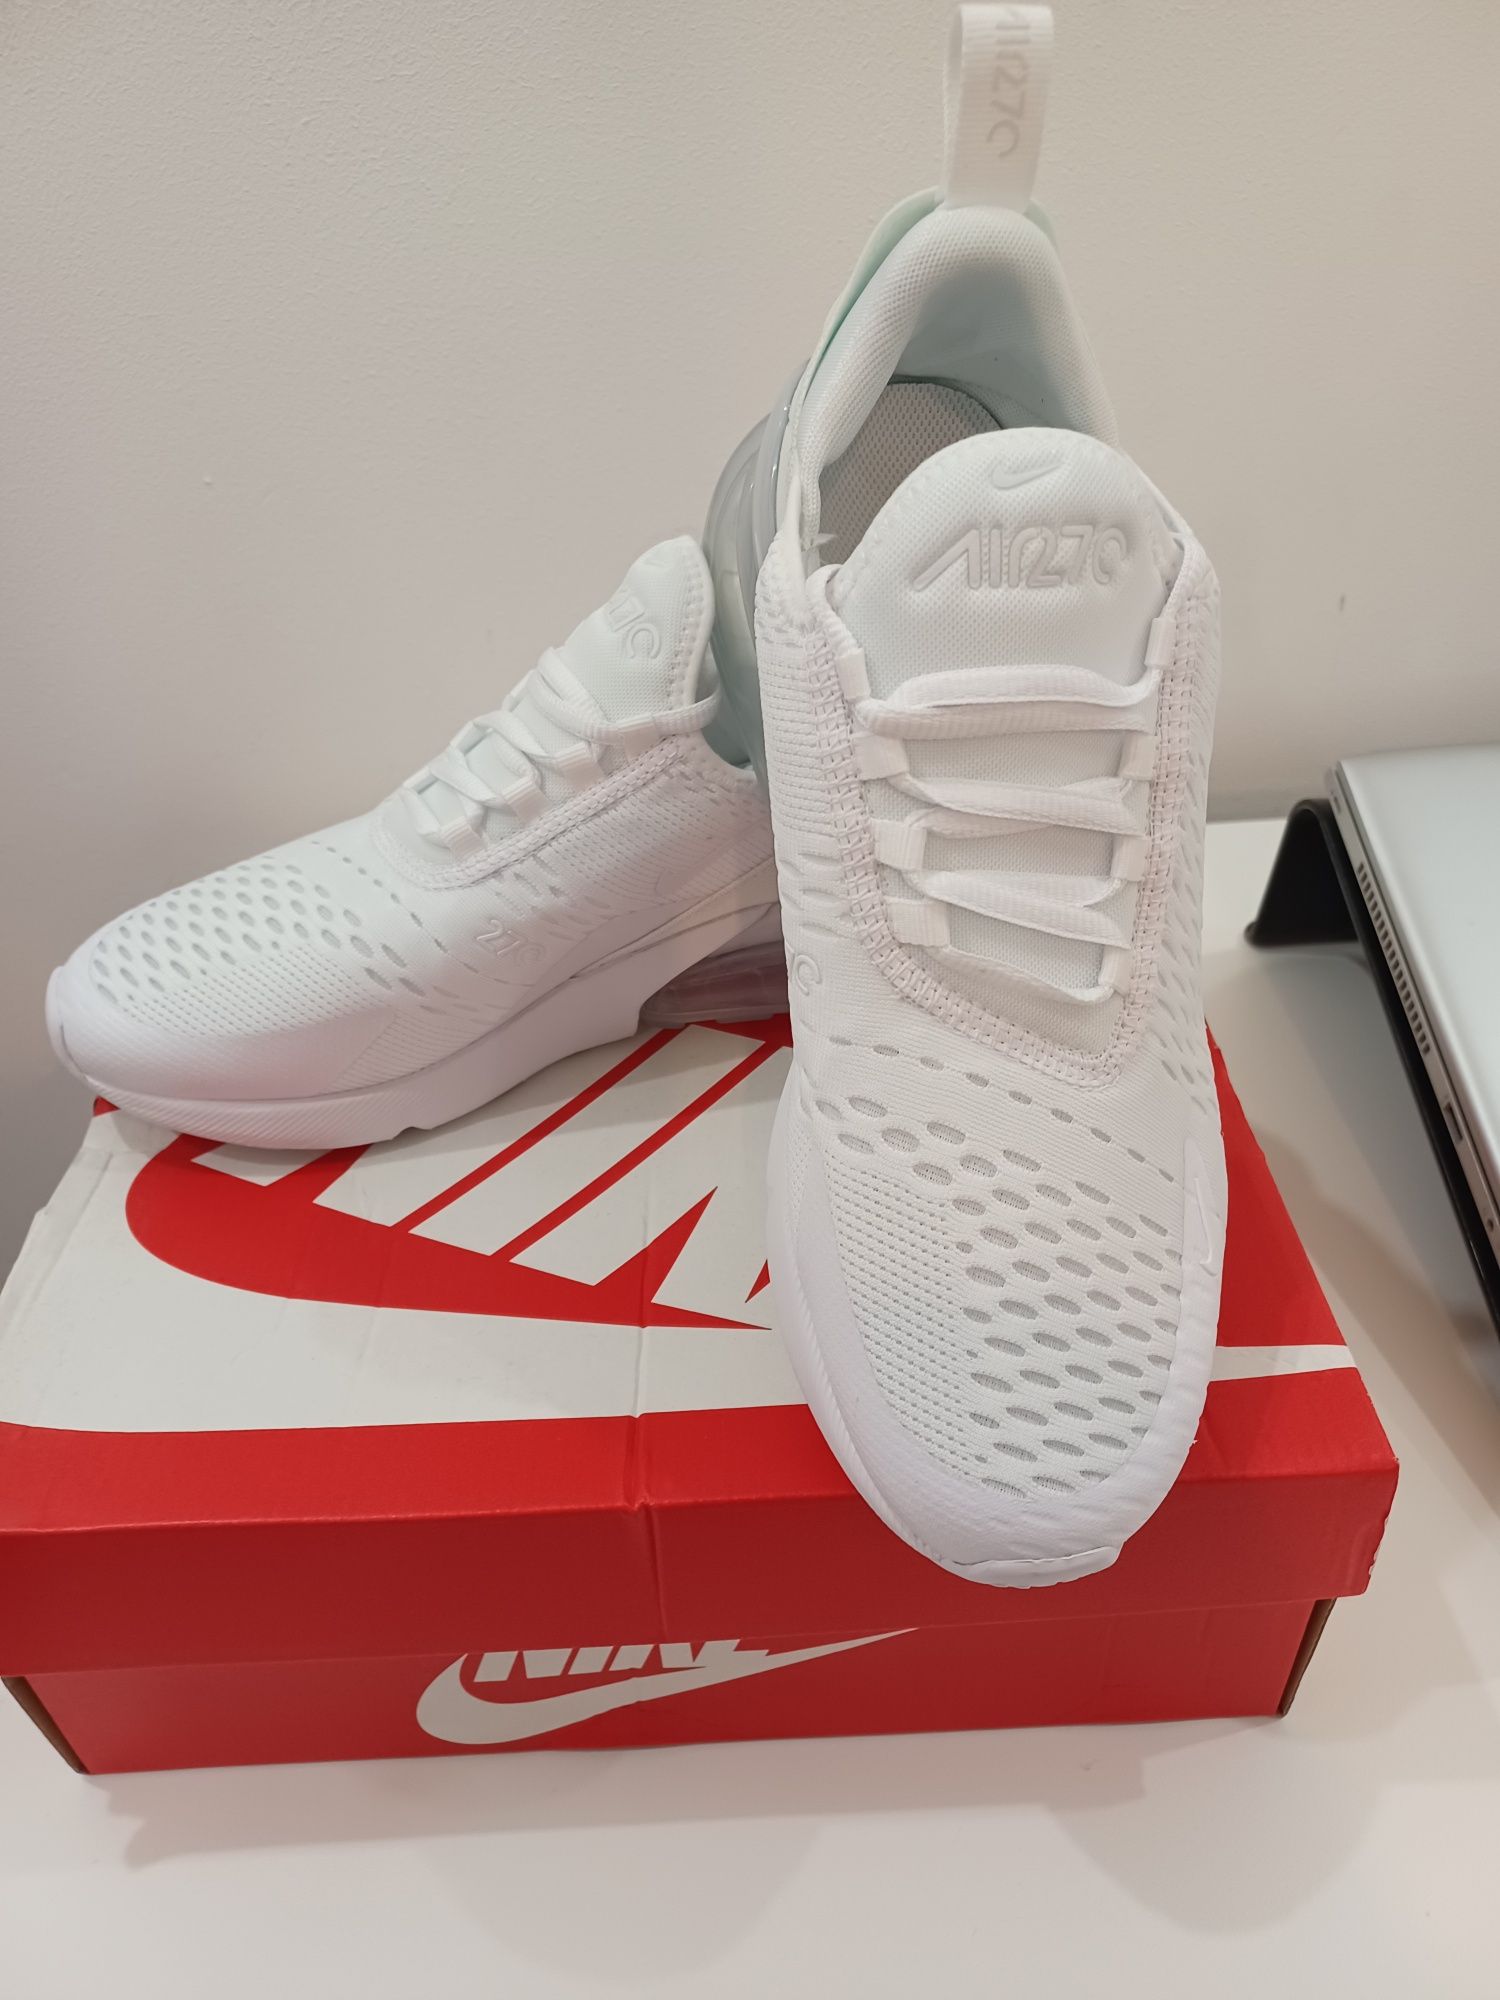 Vand adidasi Nike Air Max270 albi